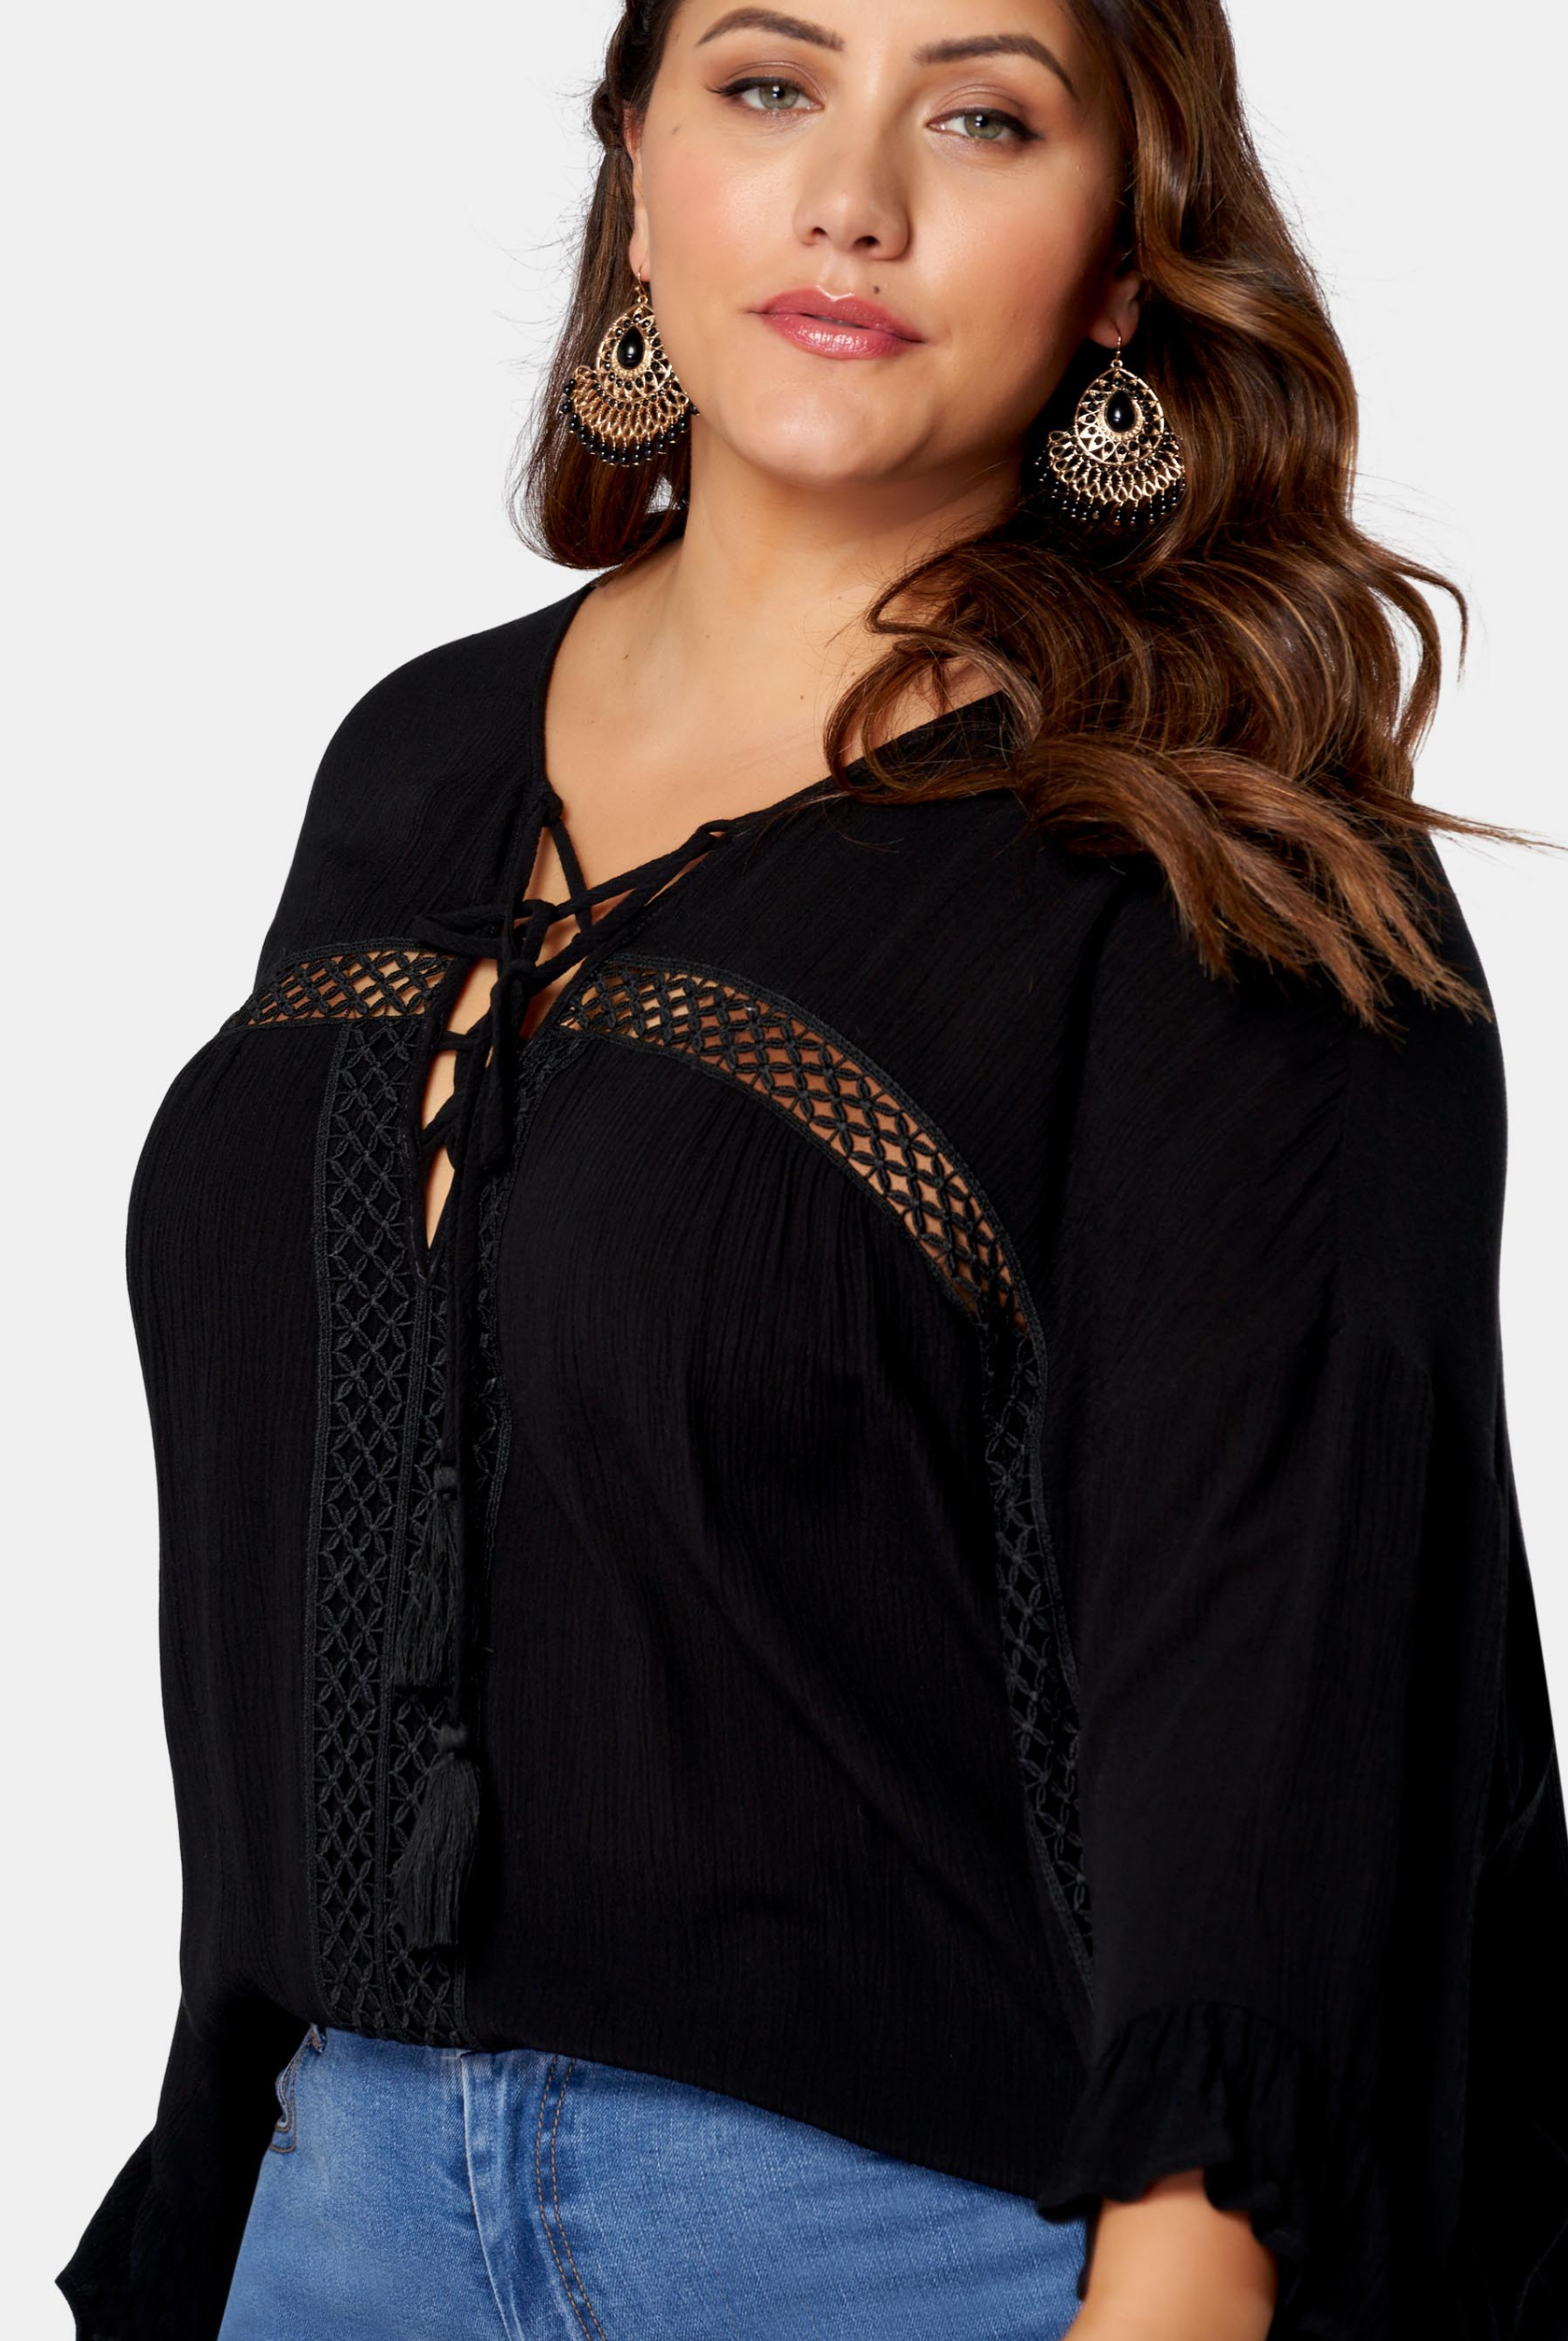 Woman wearing black boho blouse